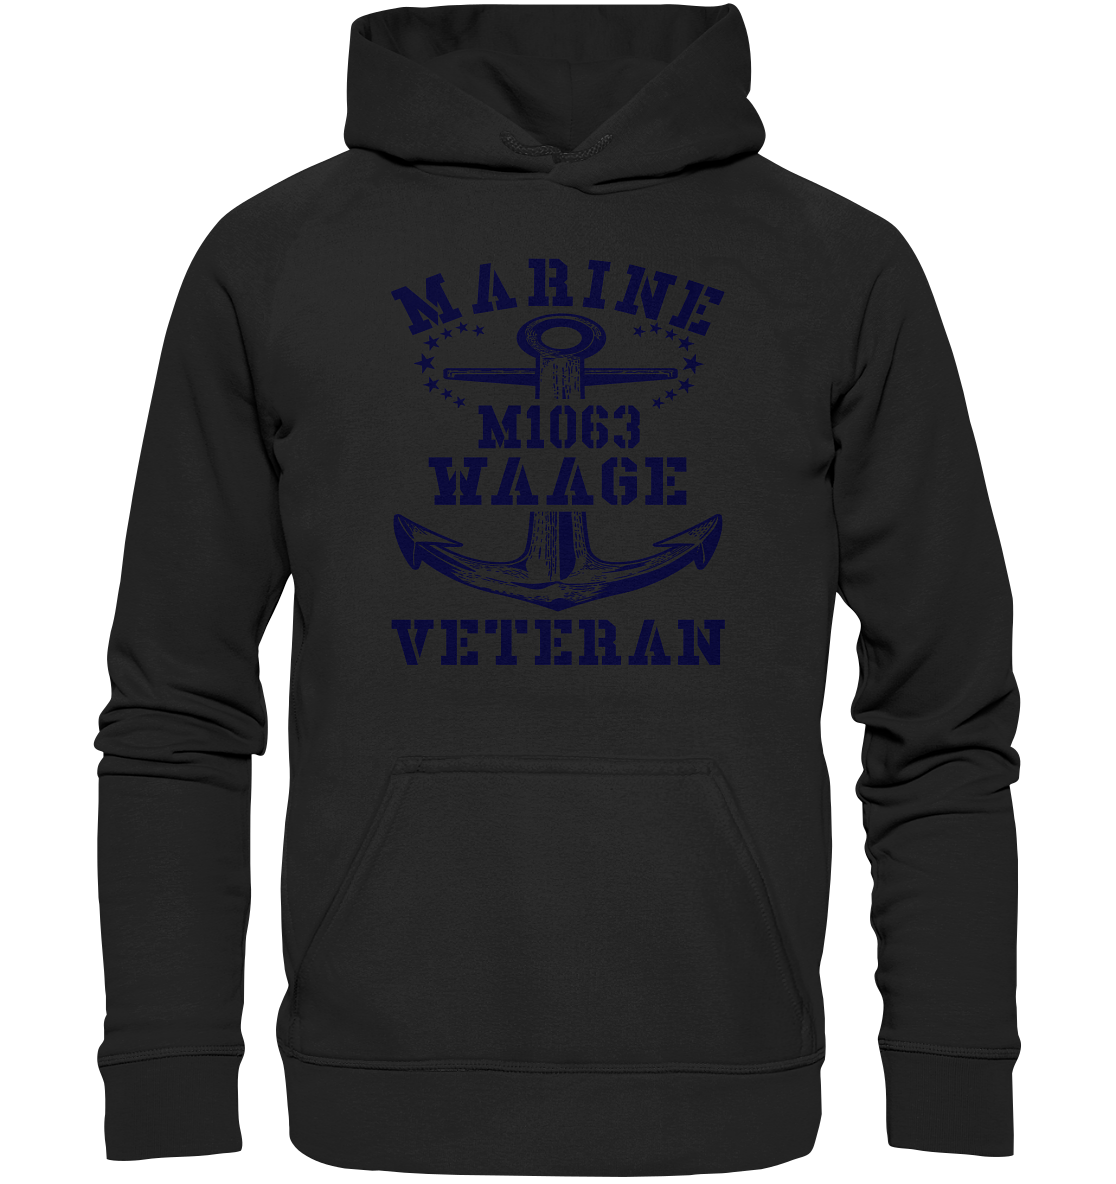 SM-Boot M1063 WAAGE Marine Veteran - Basic Unisex Hoodie